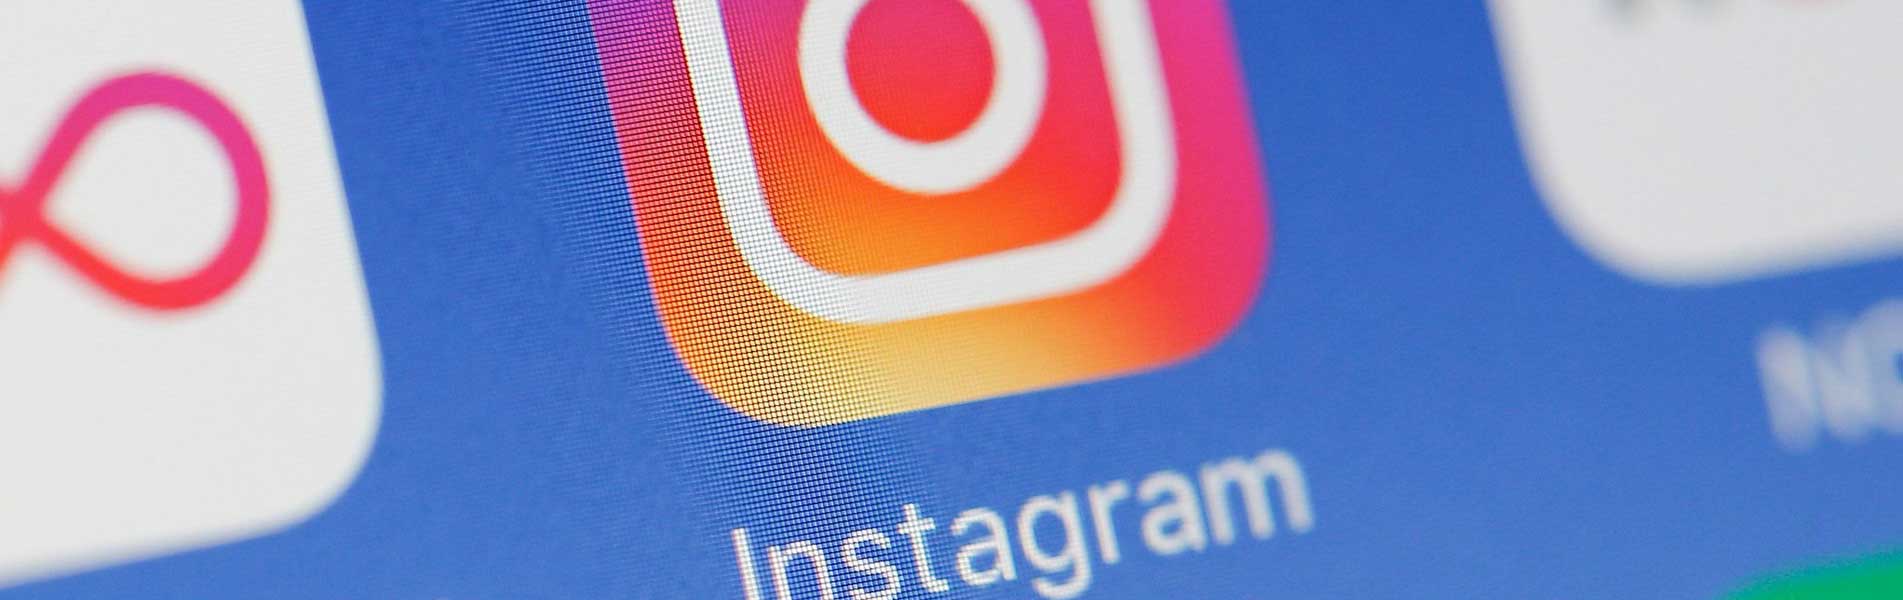 Kiat Memanfaatkan Instagram Untuk Memasarkan Produk